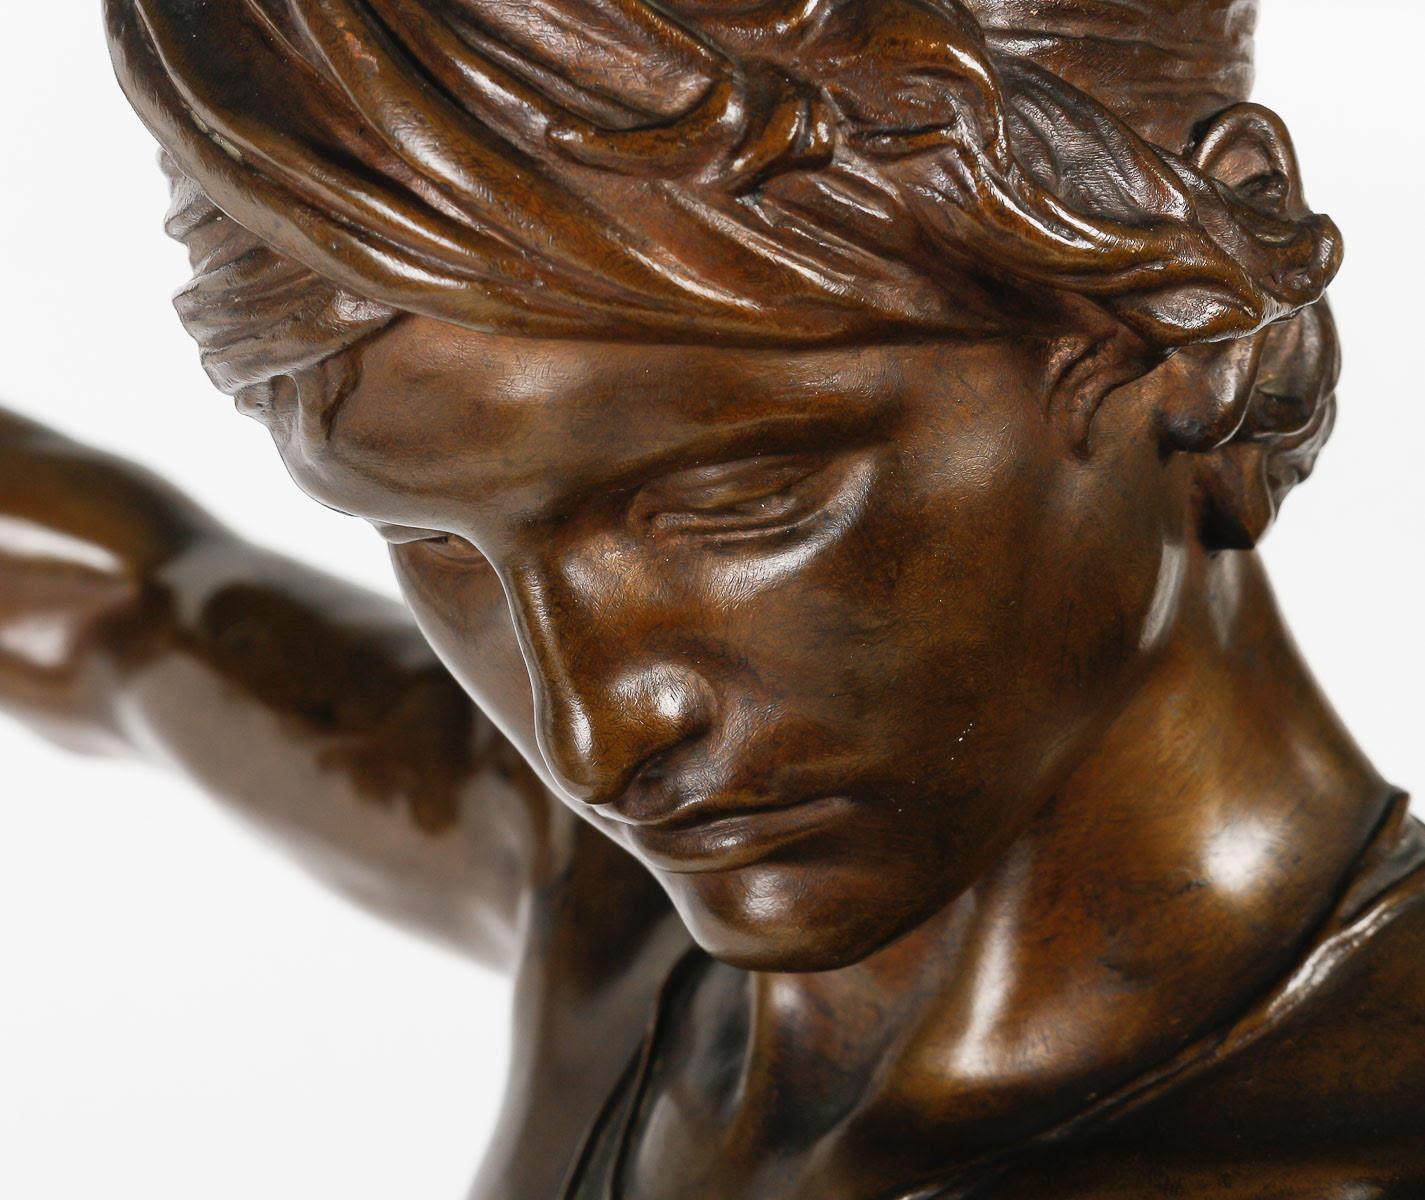 Napoleon III Bronze Sculpture by Antonin Mercier (1845-1916).